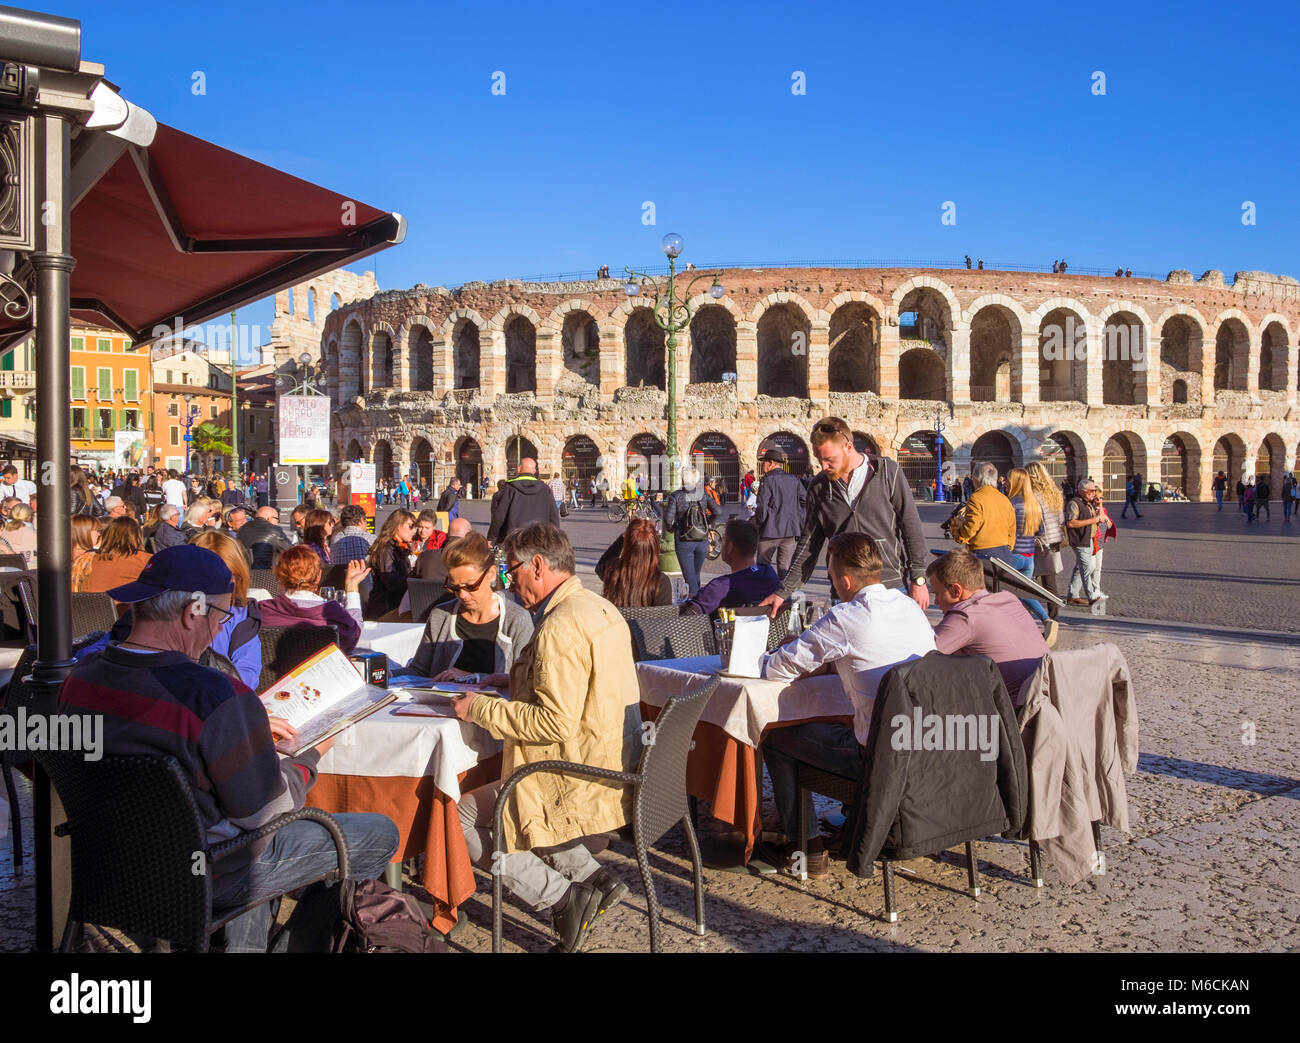 Vérone, Italie - Piazza Bra, montrant l'arène romaine et de gens assis au restaurant cafés Banque D'Images